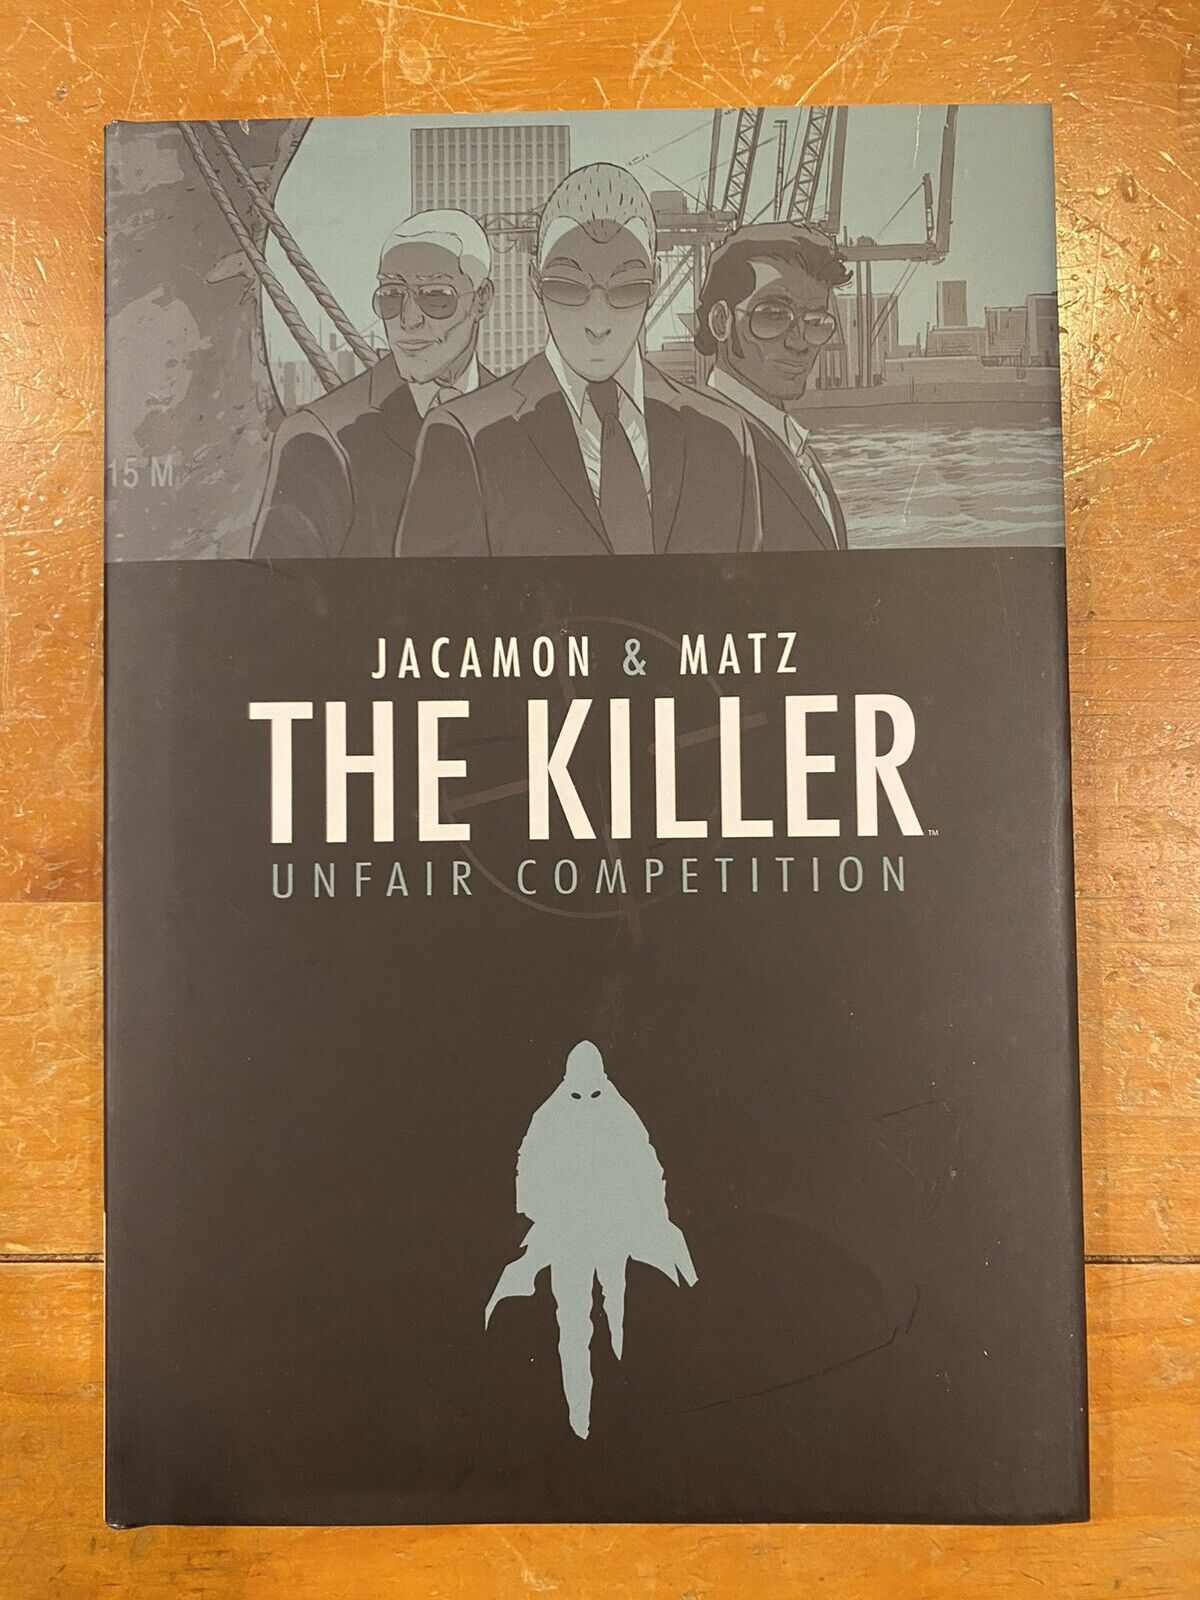 The Killer Vol 4: Unfair Competition HC (Archaia 2013) by Jacamon & Matz